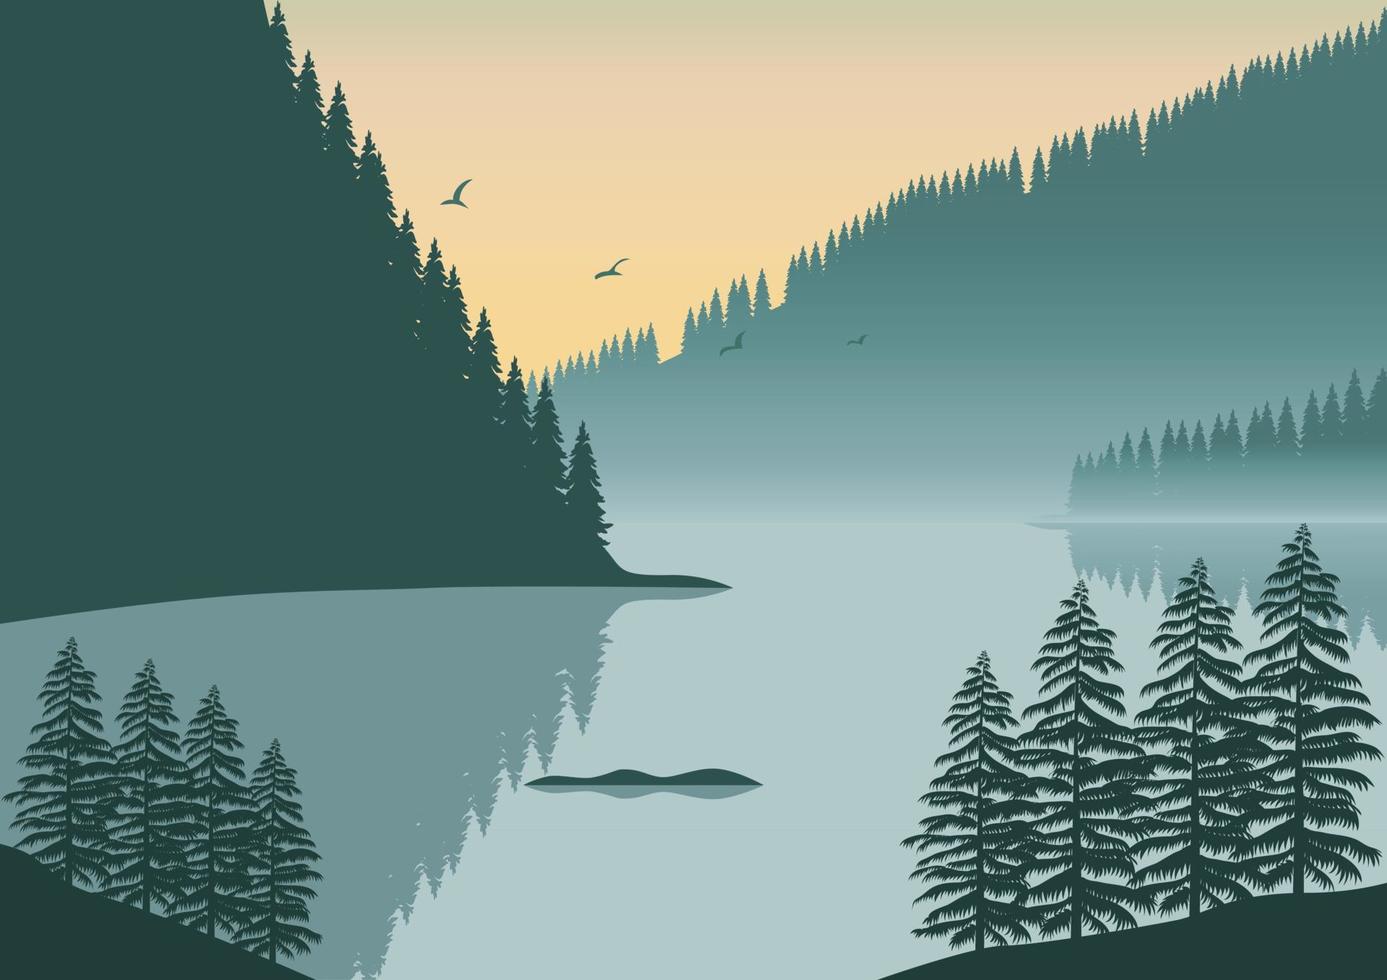 landskap reflekterad i de sjö med bergen vektor illustration.